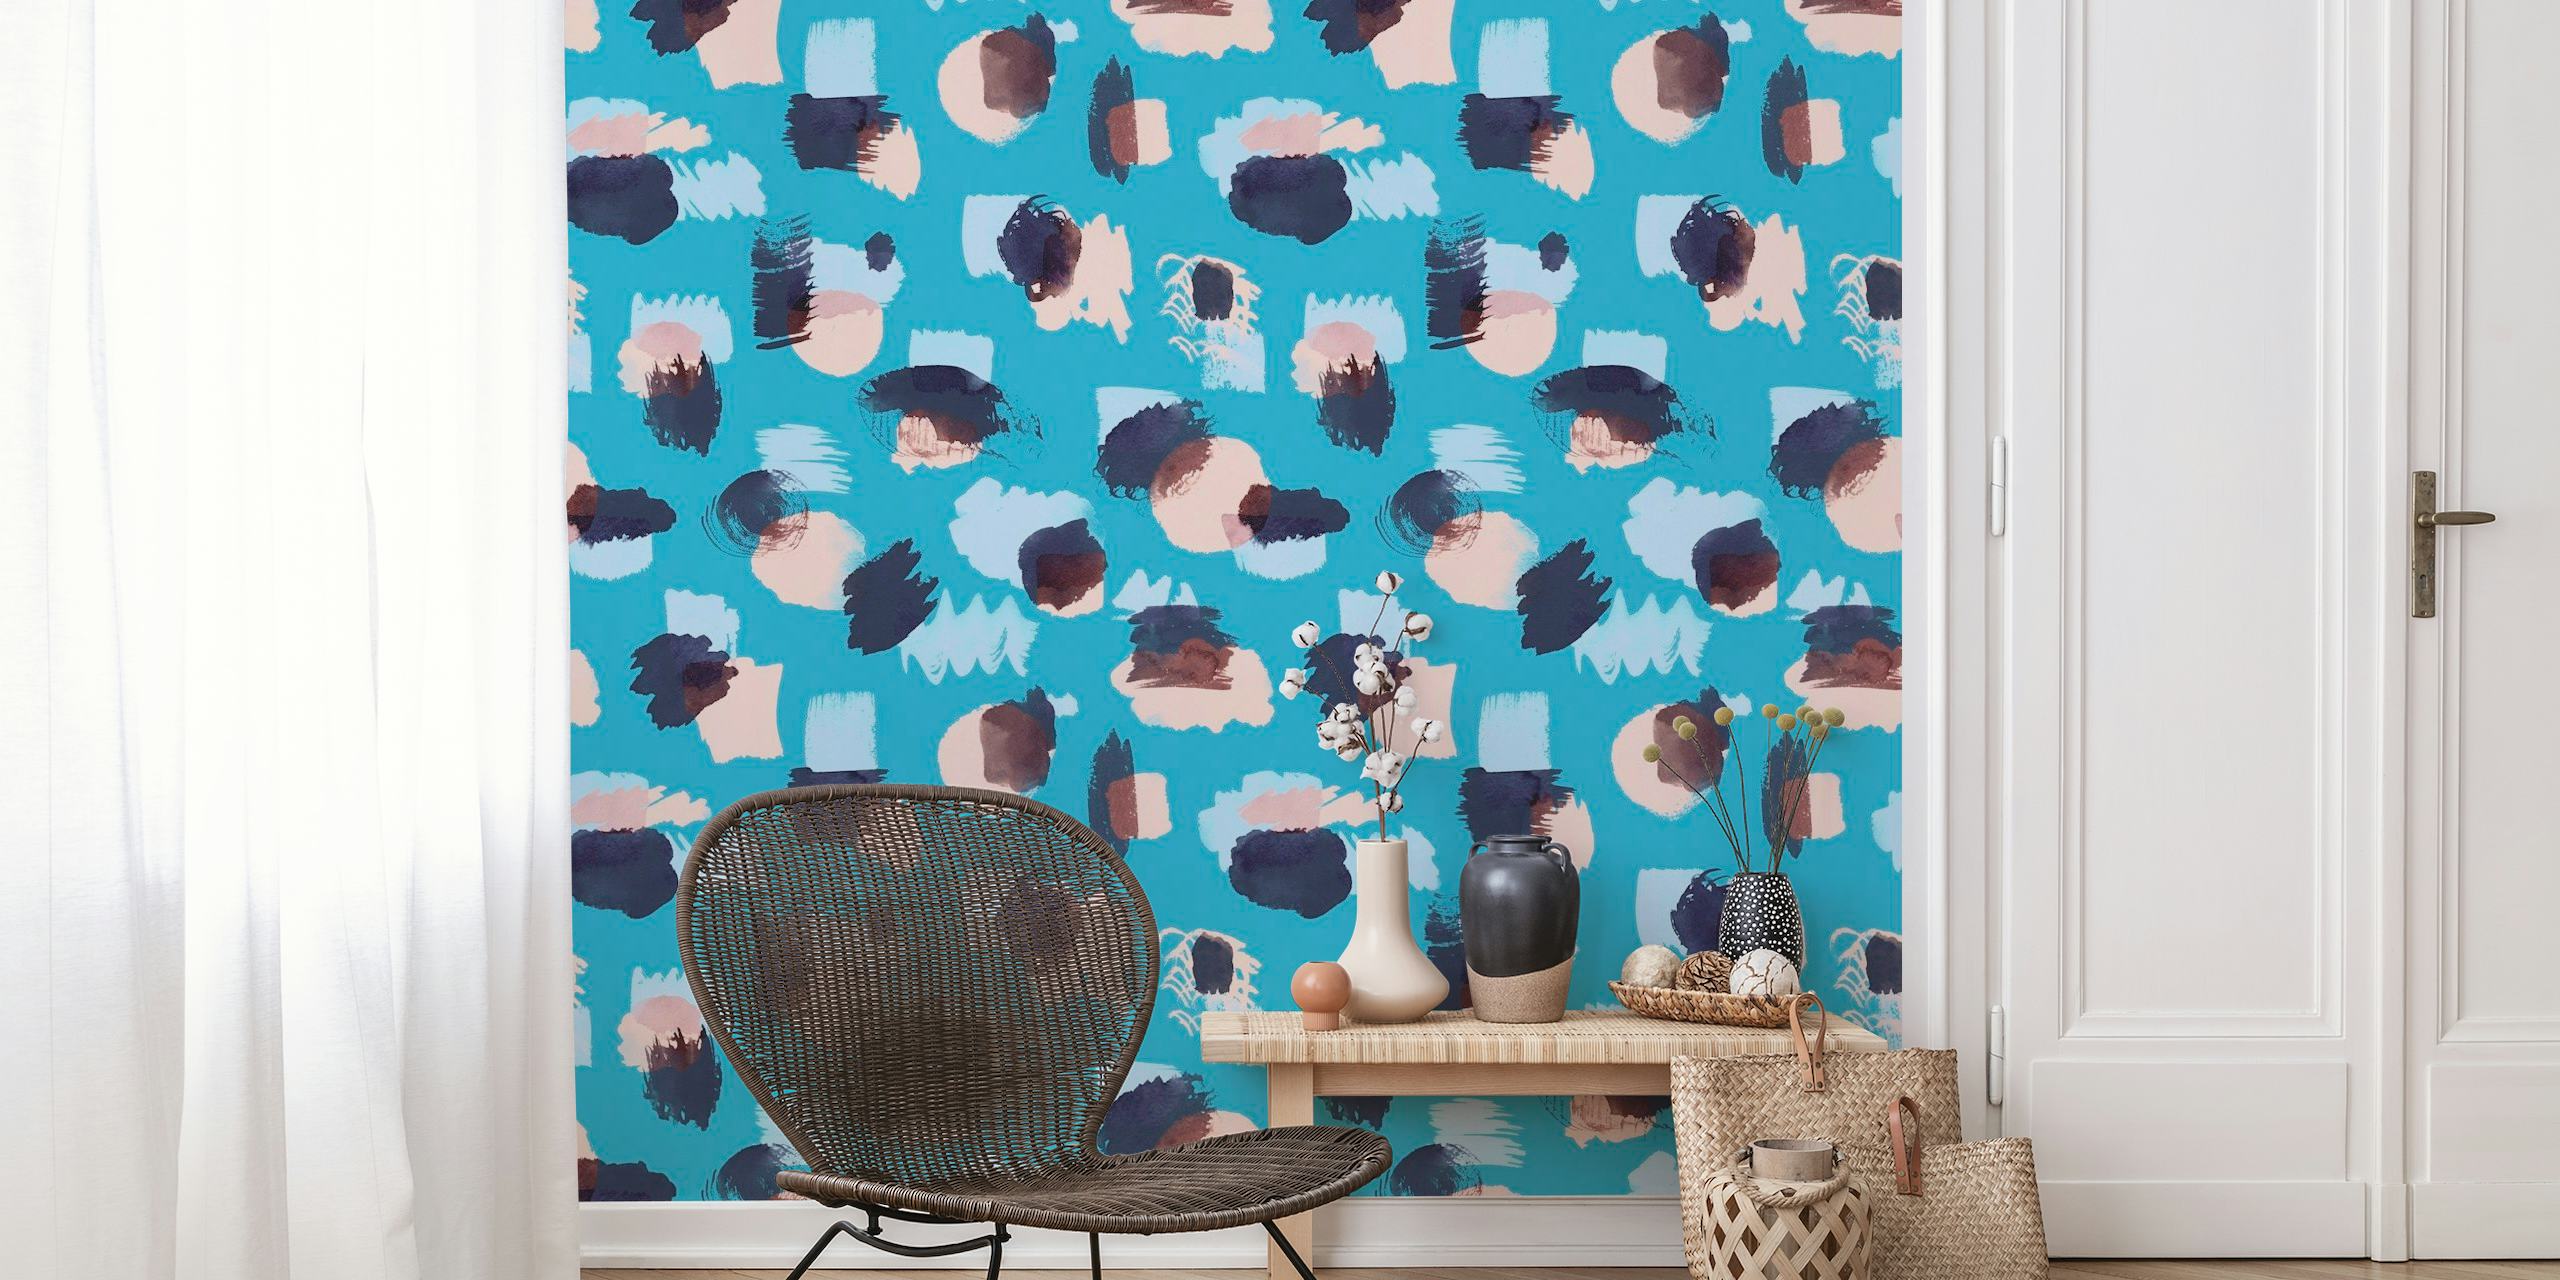 fotomural vinílico de parede com pinceladas azuis abstratas